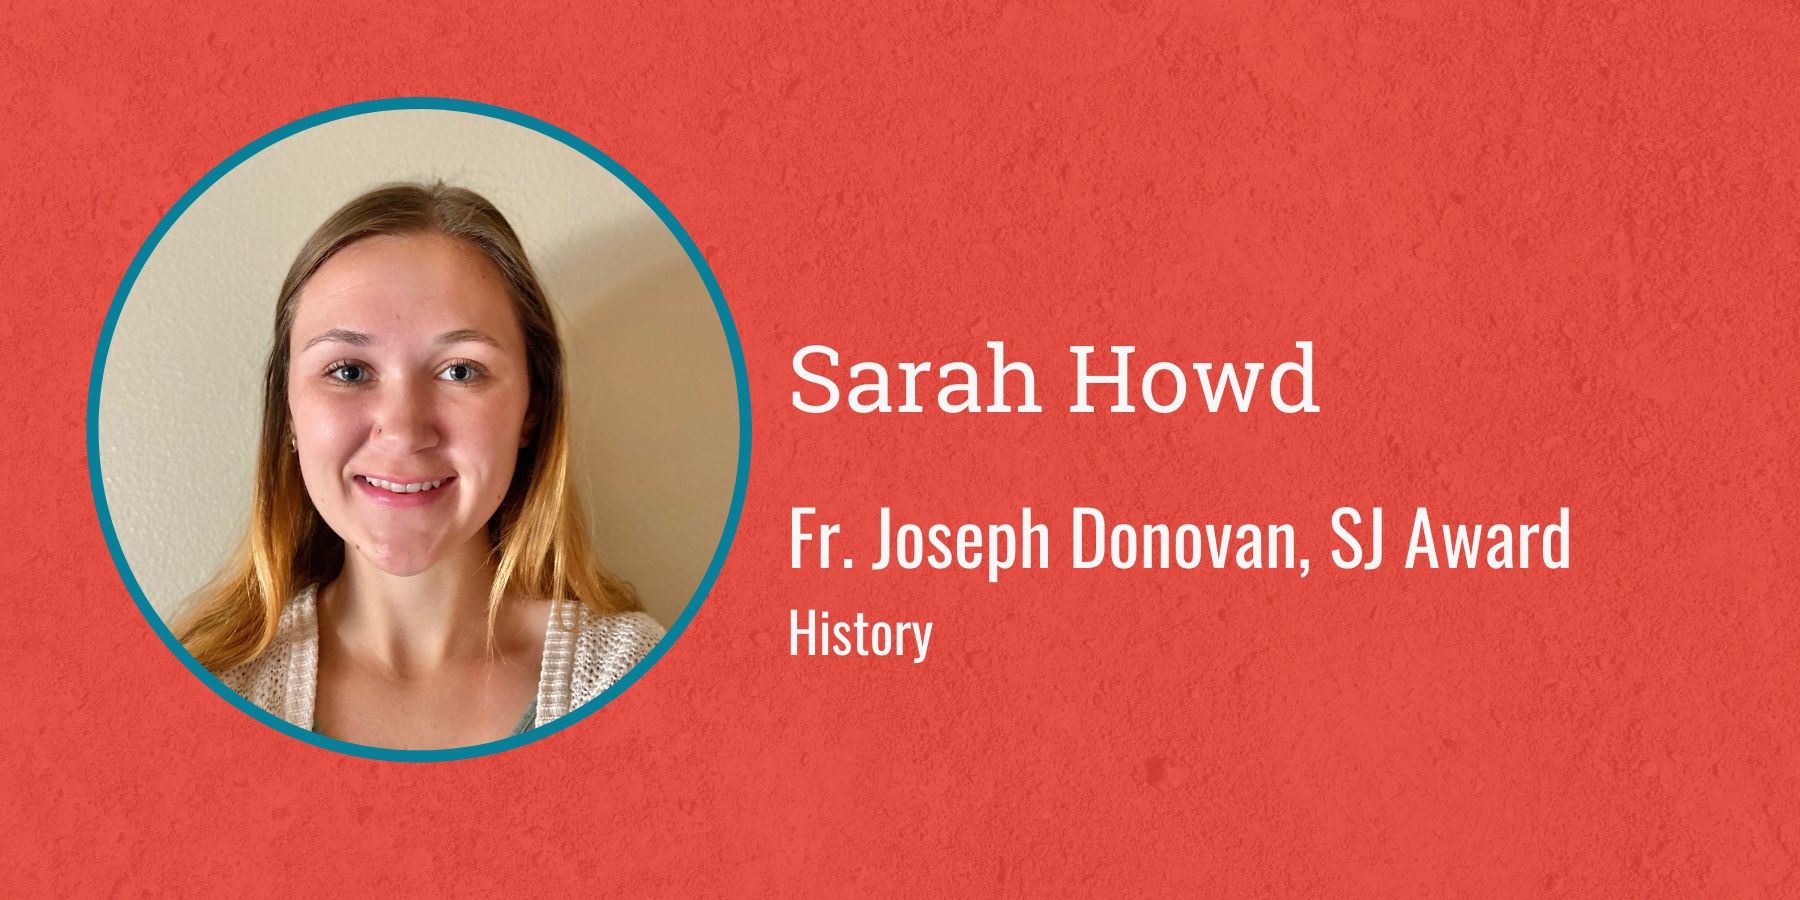 Photo of Sarah Howd and text Fr. Joseph Donovan, S.J. Award History
